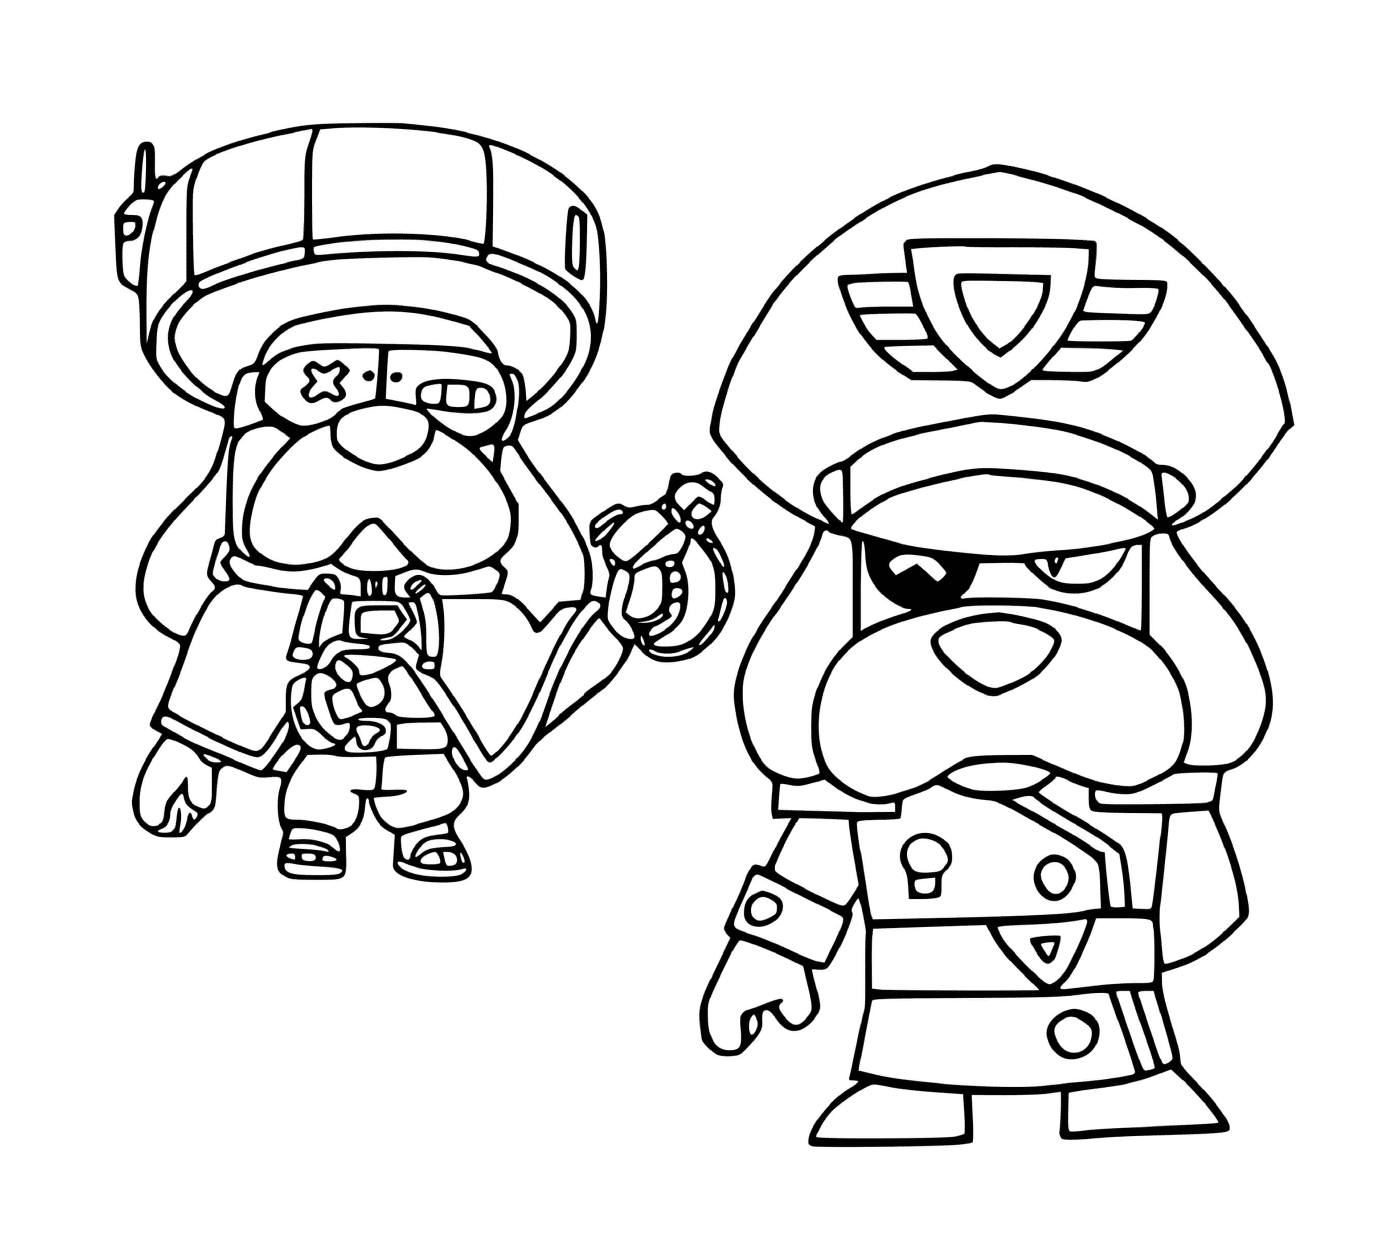  Zwei animierte Charaktere bereit zu kämpfen! 